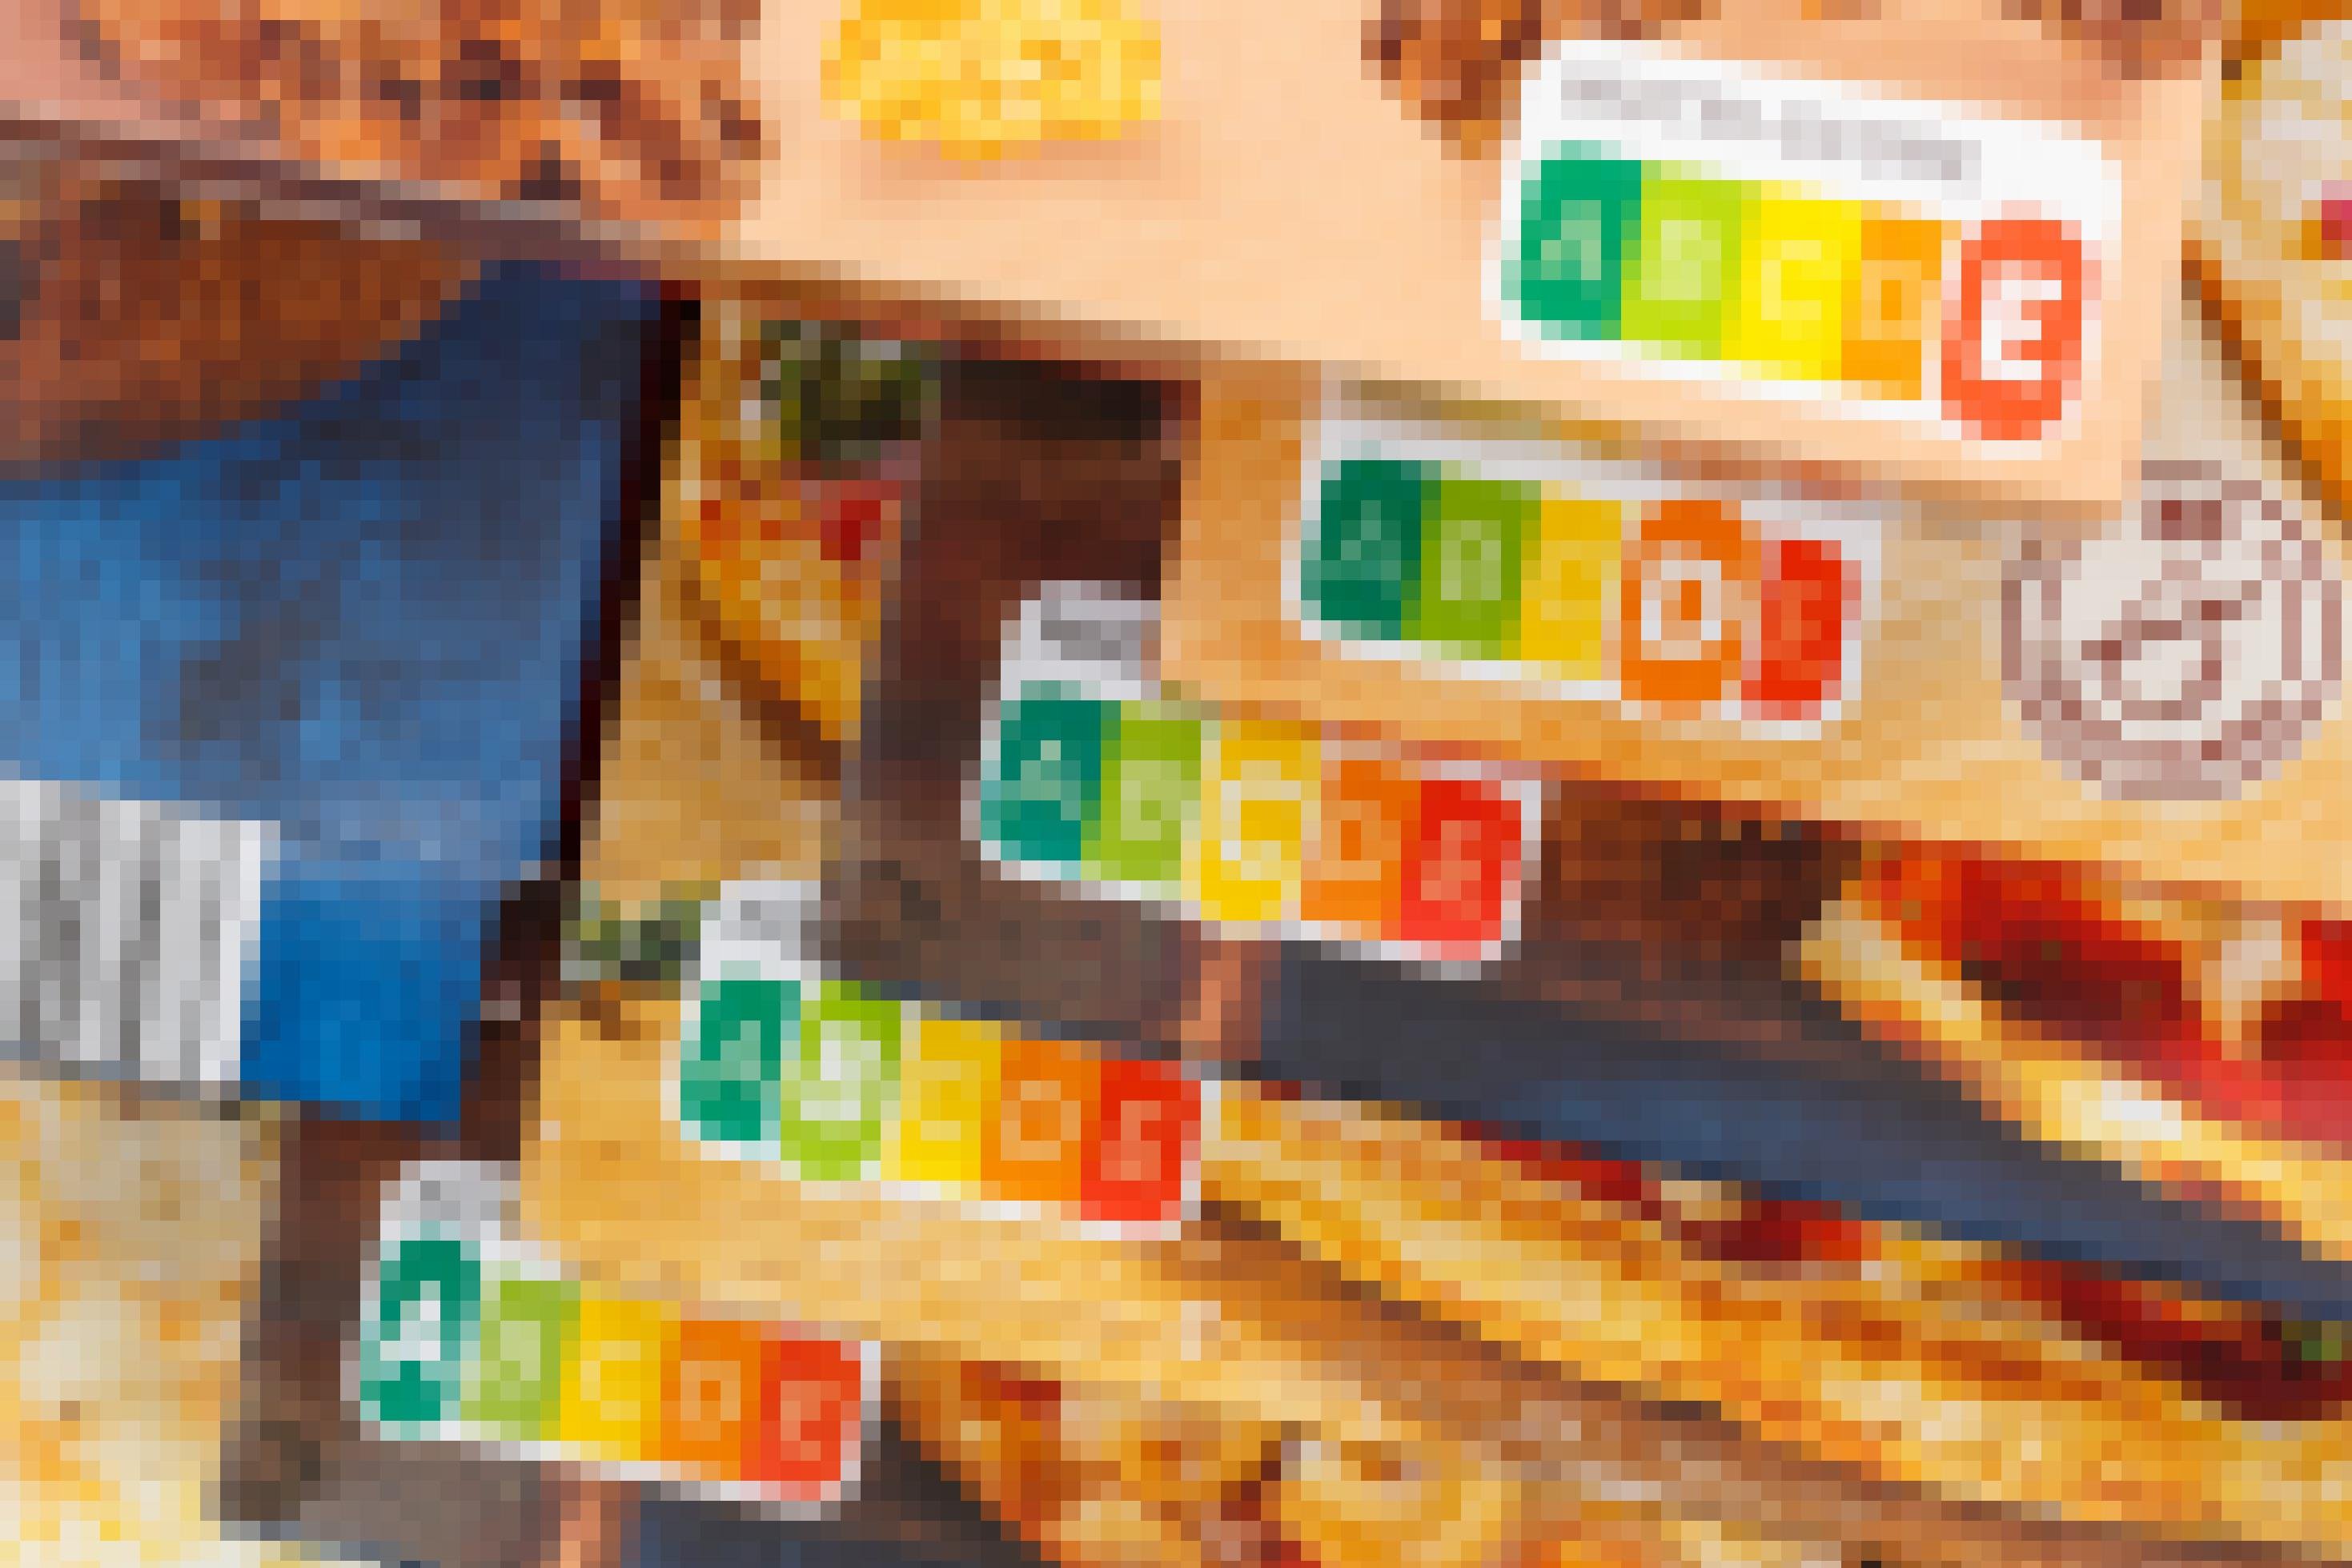 Das Bild zeigt Ecken mehrerer Lebensmittelpackungen. Neben einem kleinen Teil der Produktfotos von Pizza und Frühstücksflocken ist vor allem das Nutri-Score-Label zu sehen, die in Ampelfarben gestaltete Nährwertkennzeichnung.